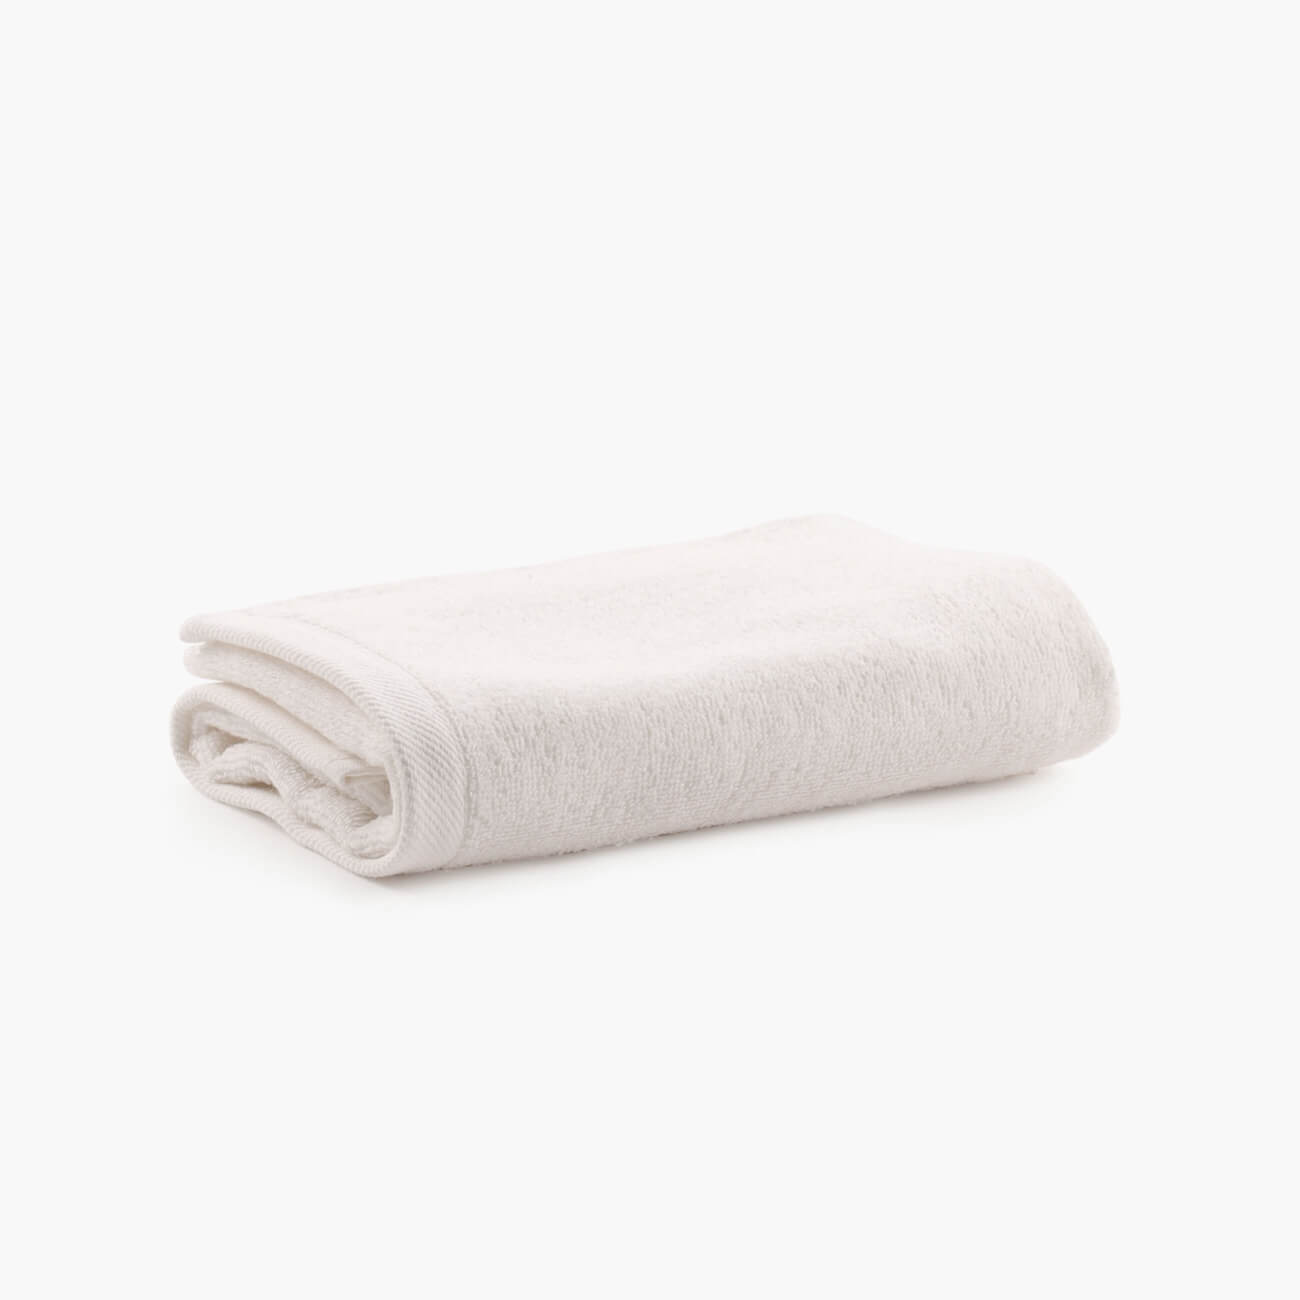 Полотенце, 40х60 см, хлопок, молочное, Wellness полотенце